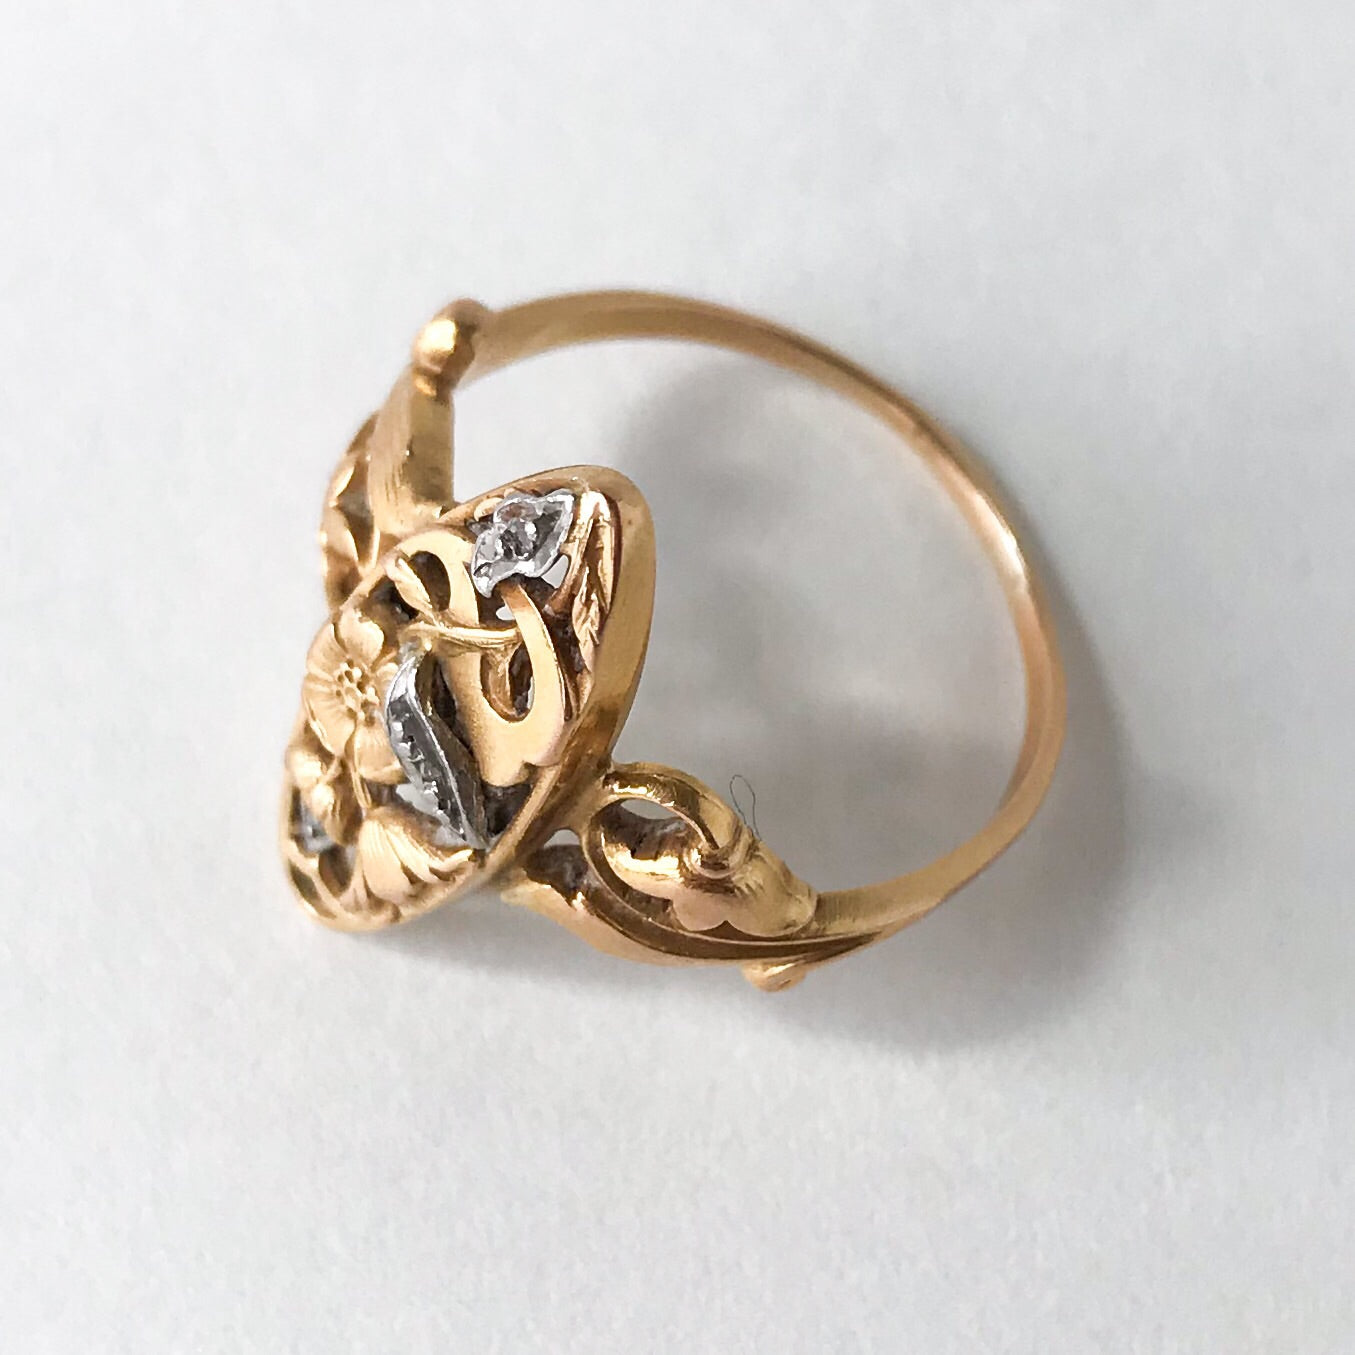 SOLD--Art Nouveau Rose Cut Diamond Navette Ring Silver/18k c. 1900